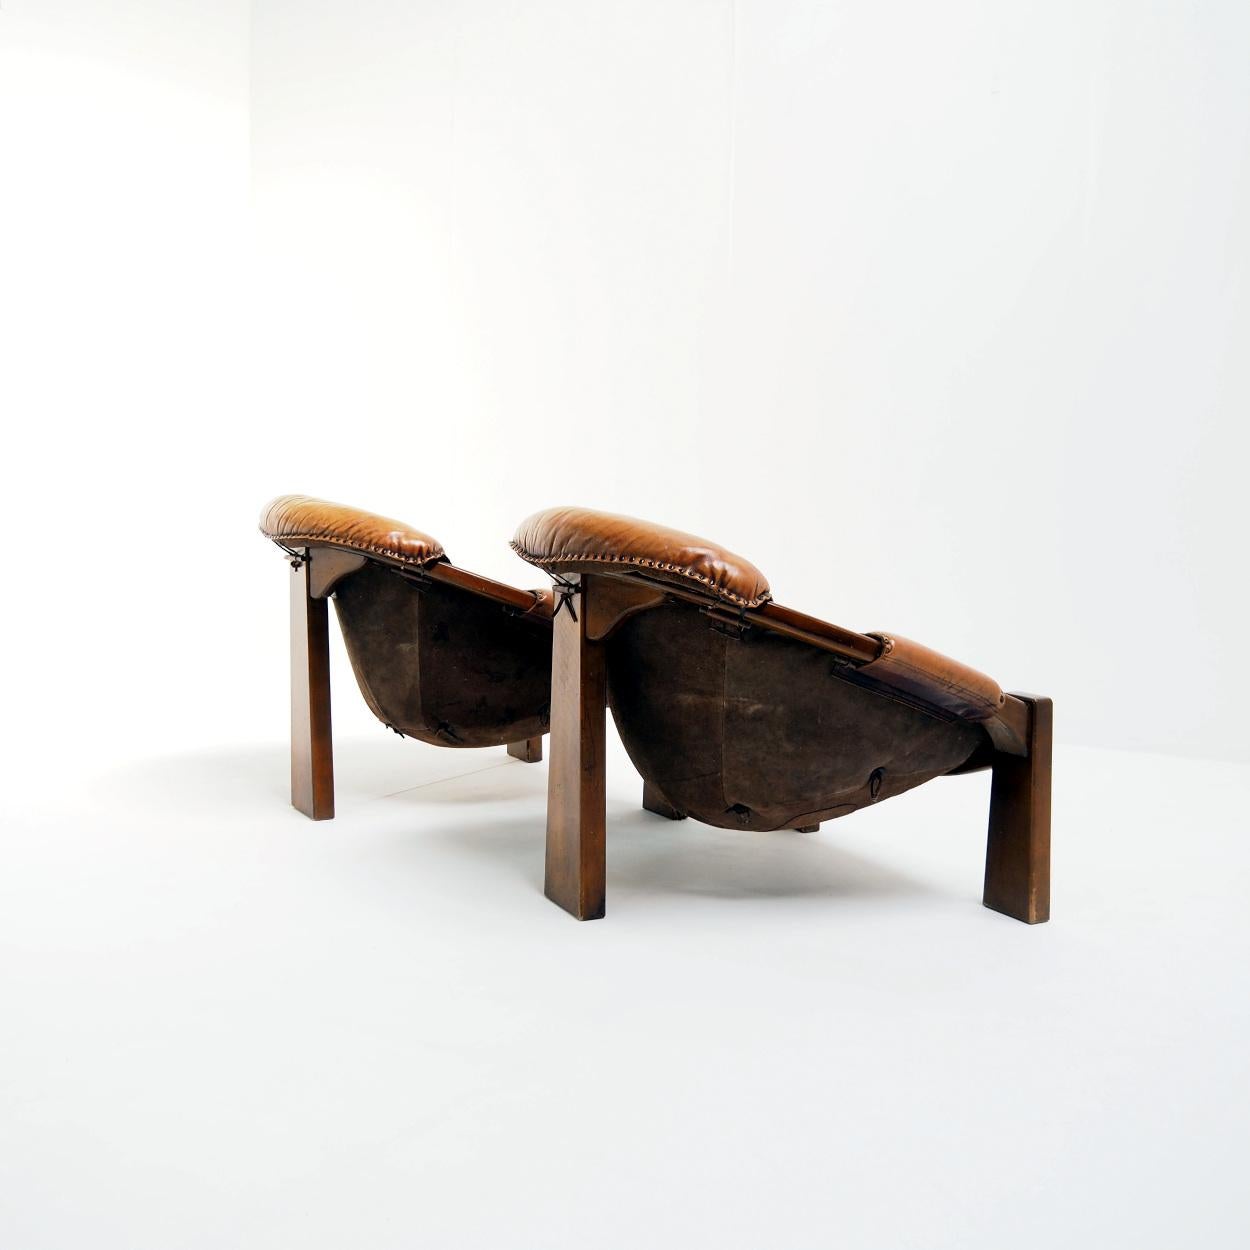 Schöner Satz Stühle im brasilianischen brutalistischen Stil aus den 1970er Jahren.

Die Stühle haben schönes patiniertes Leder mit alters- und gebrauchsbedingten Gebrauchsspuren. Sie sind aus dickem Ziegenleder, Ledernähten und Massivholz